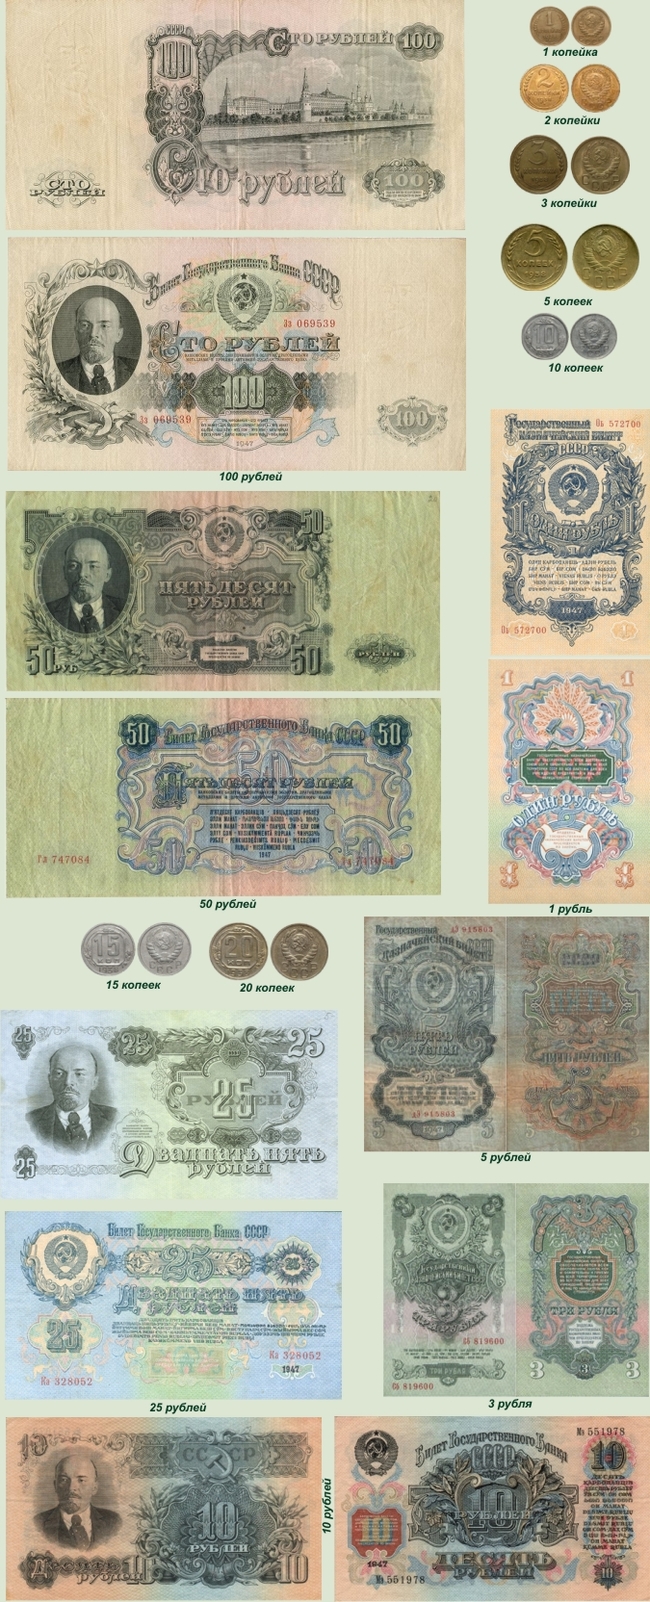 Деньги 1947 года Деньги, 1947, Реформа, Длиннопост